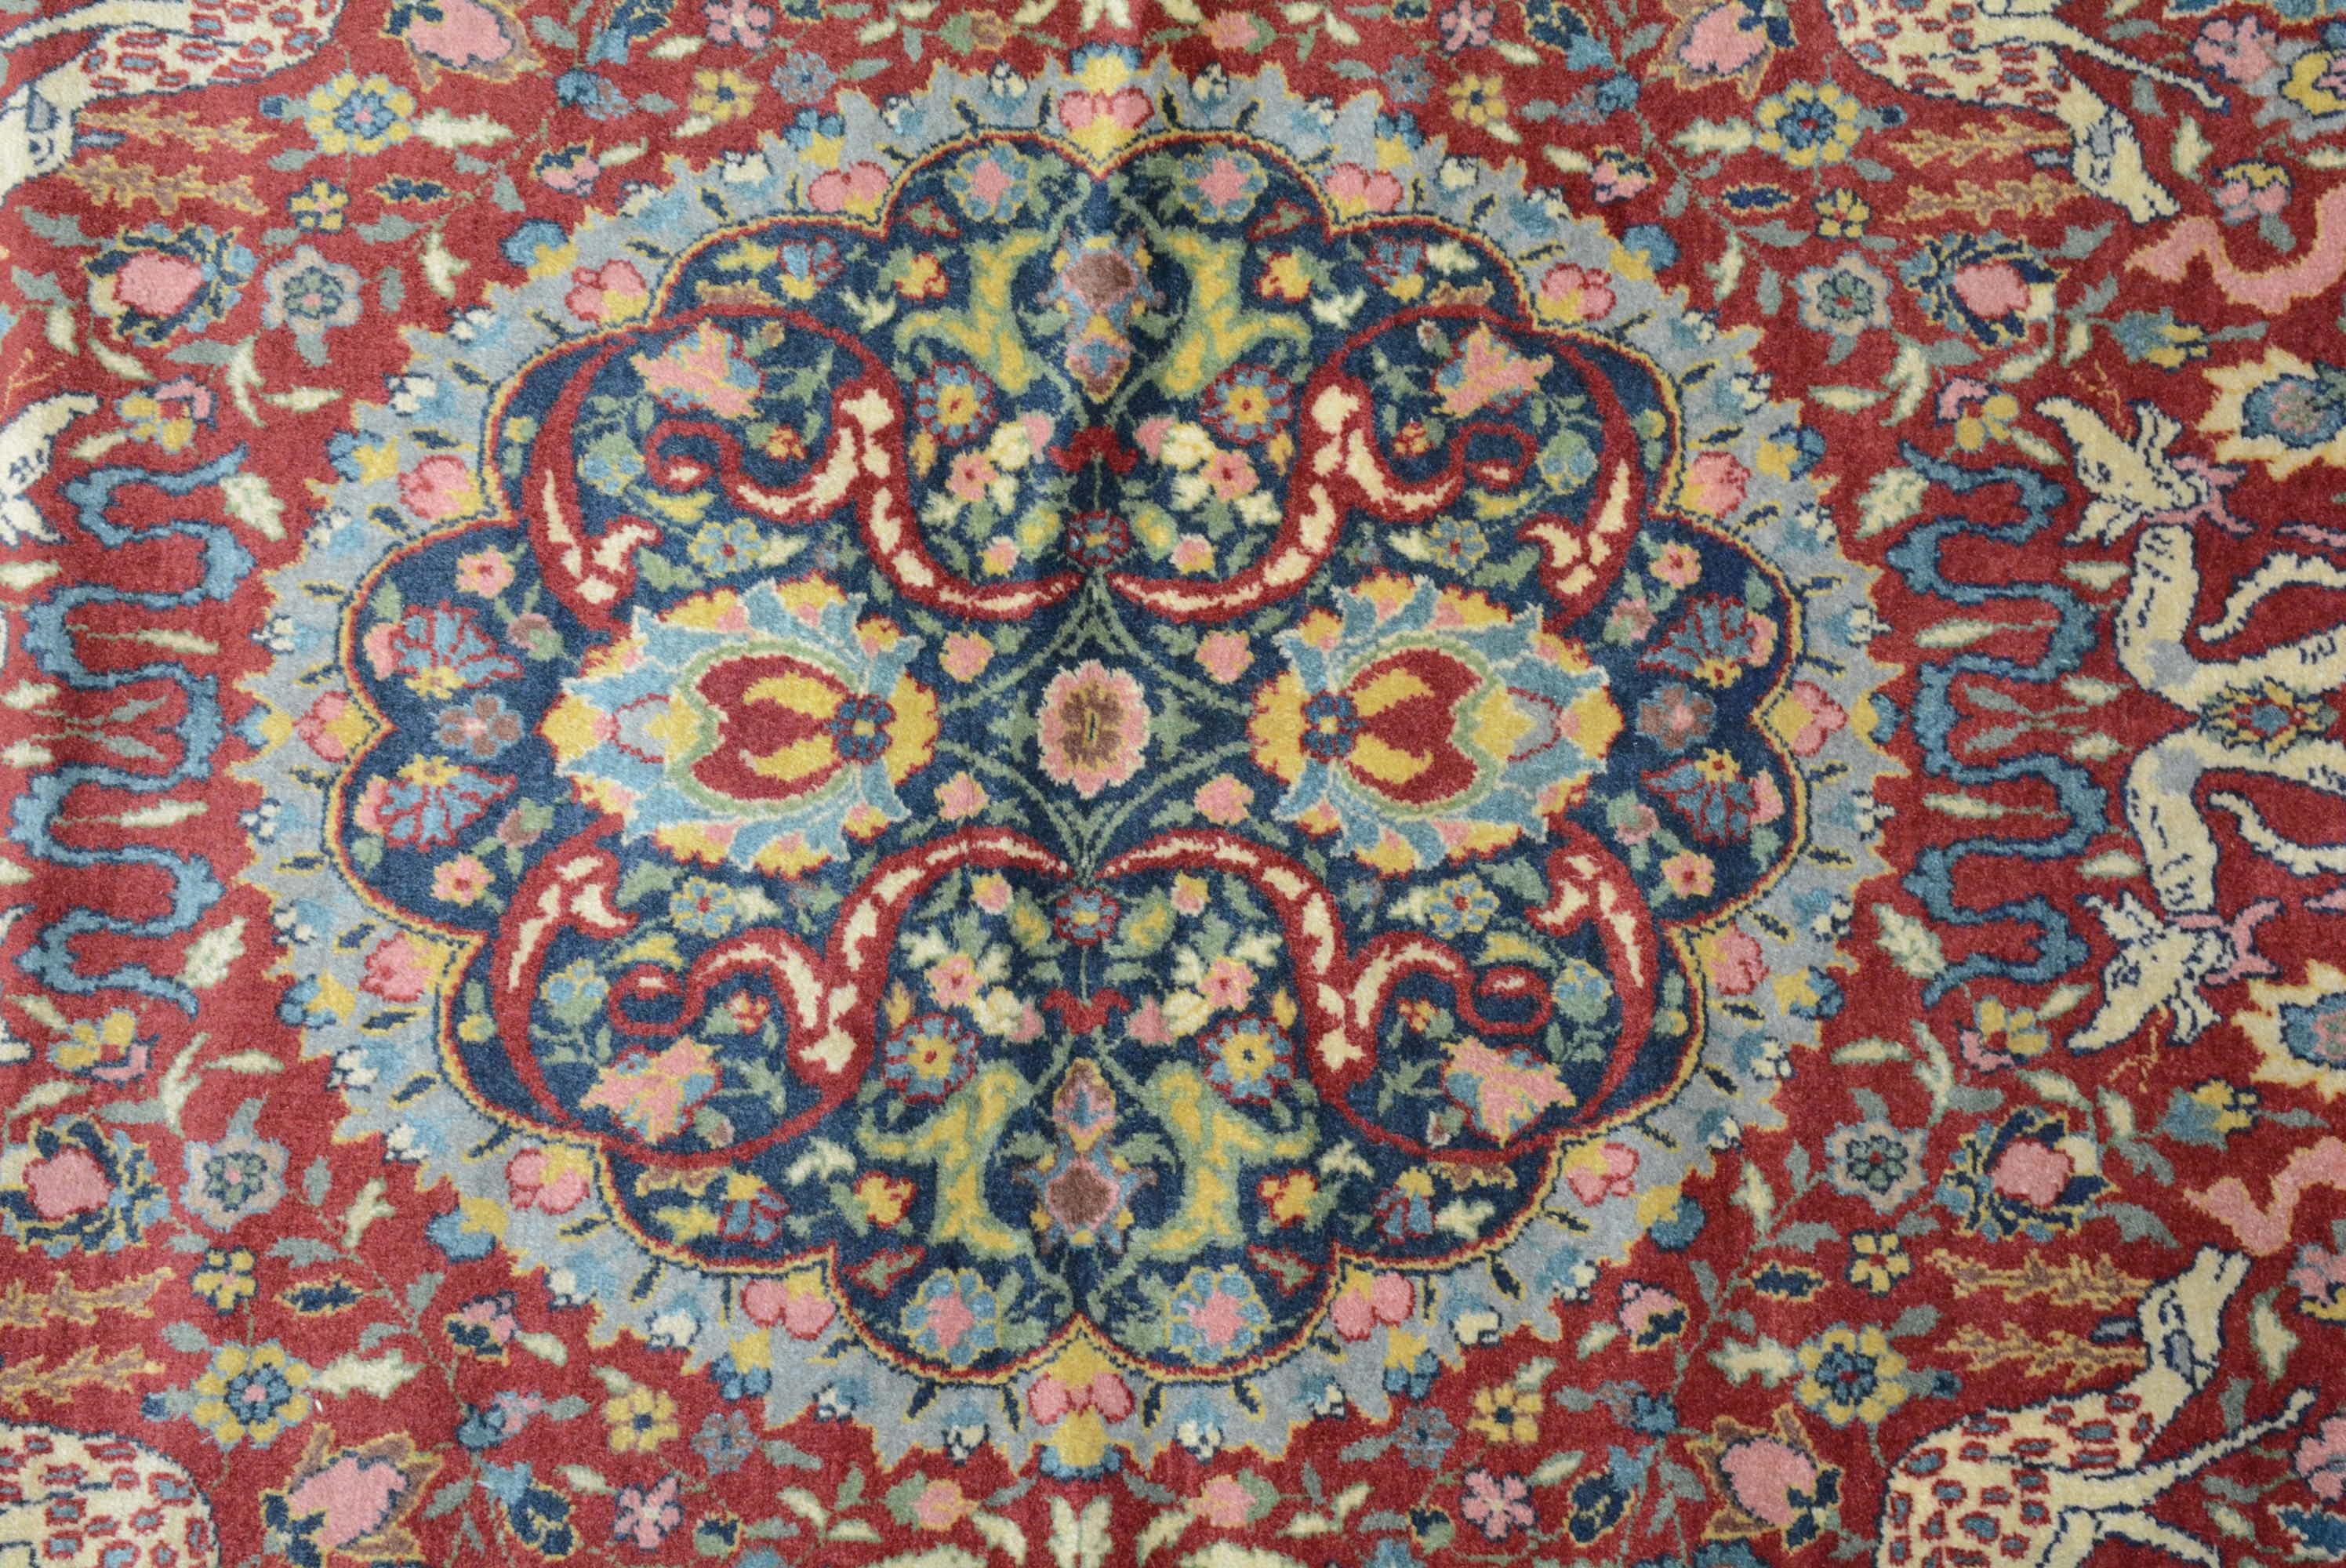 La manufacture de tapis d'Hereke, ville de l'ouest de la Turquie, a été fondée par le sultan ottoman Abdulmecid Ier en 1841 pour produire tous les textiles destinés à ses palais.  Il a rassemblé les meilleurs tisserands et artistes de l'Empire